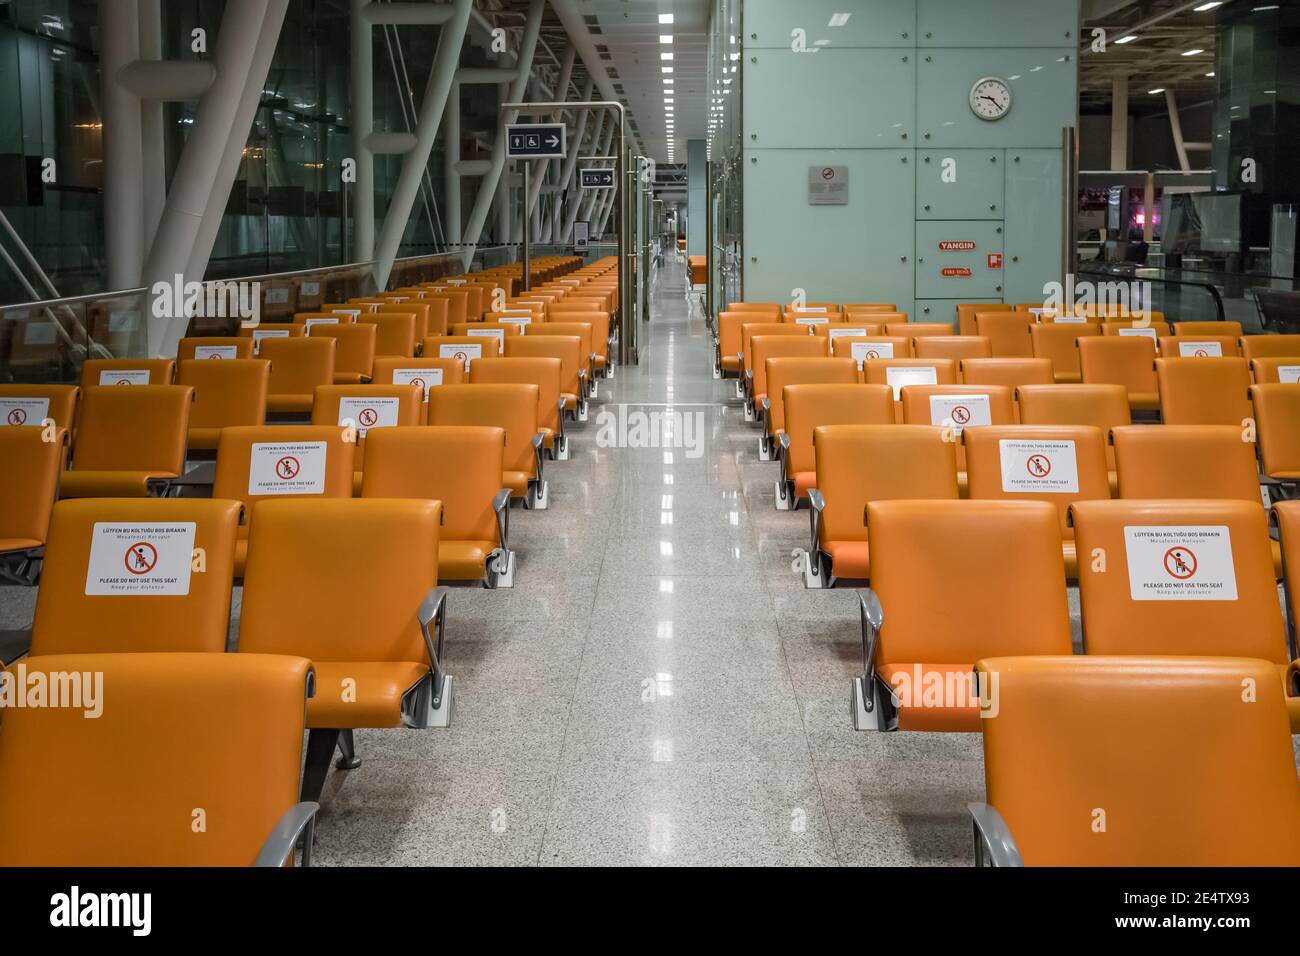 Segni sulle sedie che ricordano l'importanza della distanza sociale Durante la pandemia di Covid-19 Foto Stock